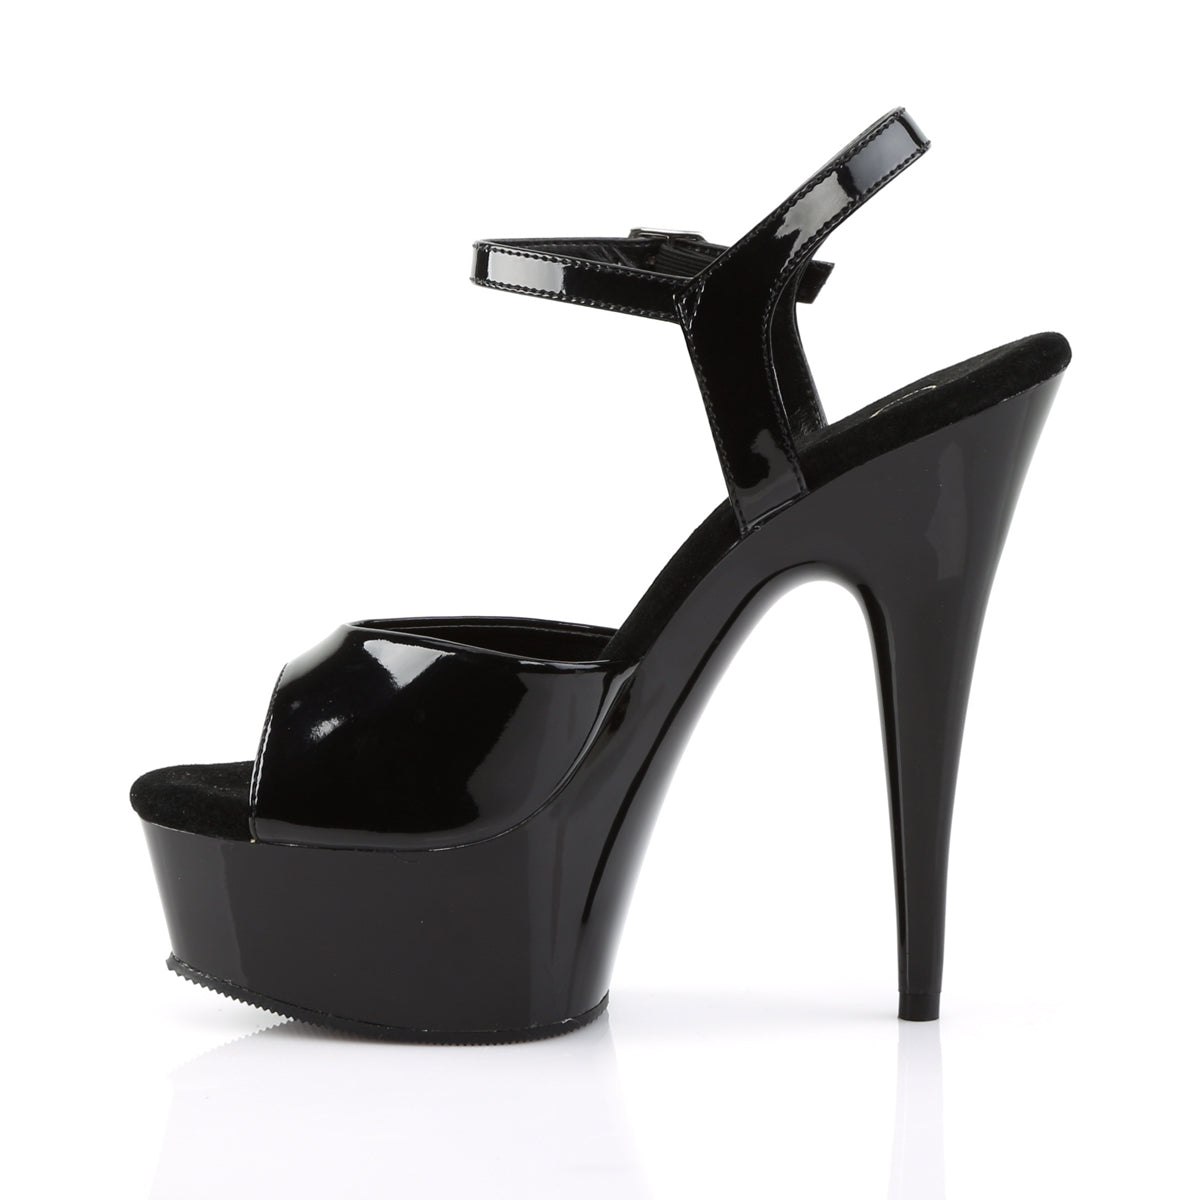 DELIGHT-609 Pleaser Black Patent Platform Shoes [Exotic Dance Shoes]